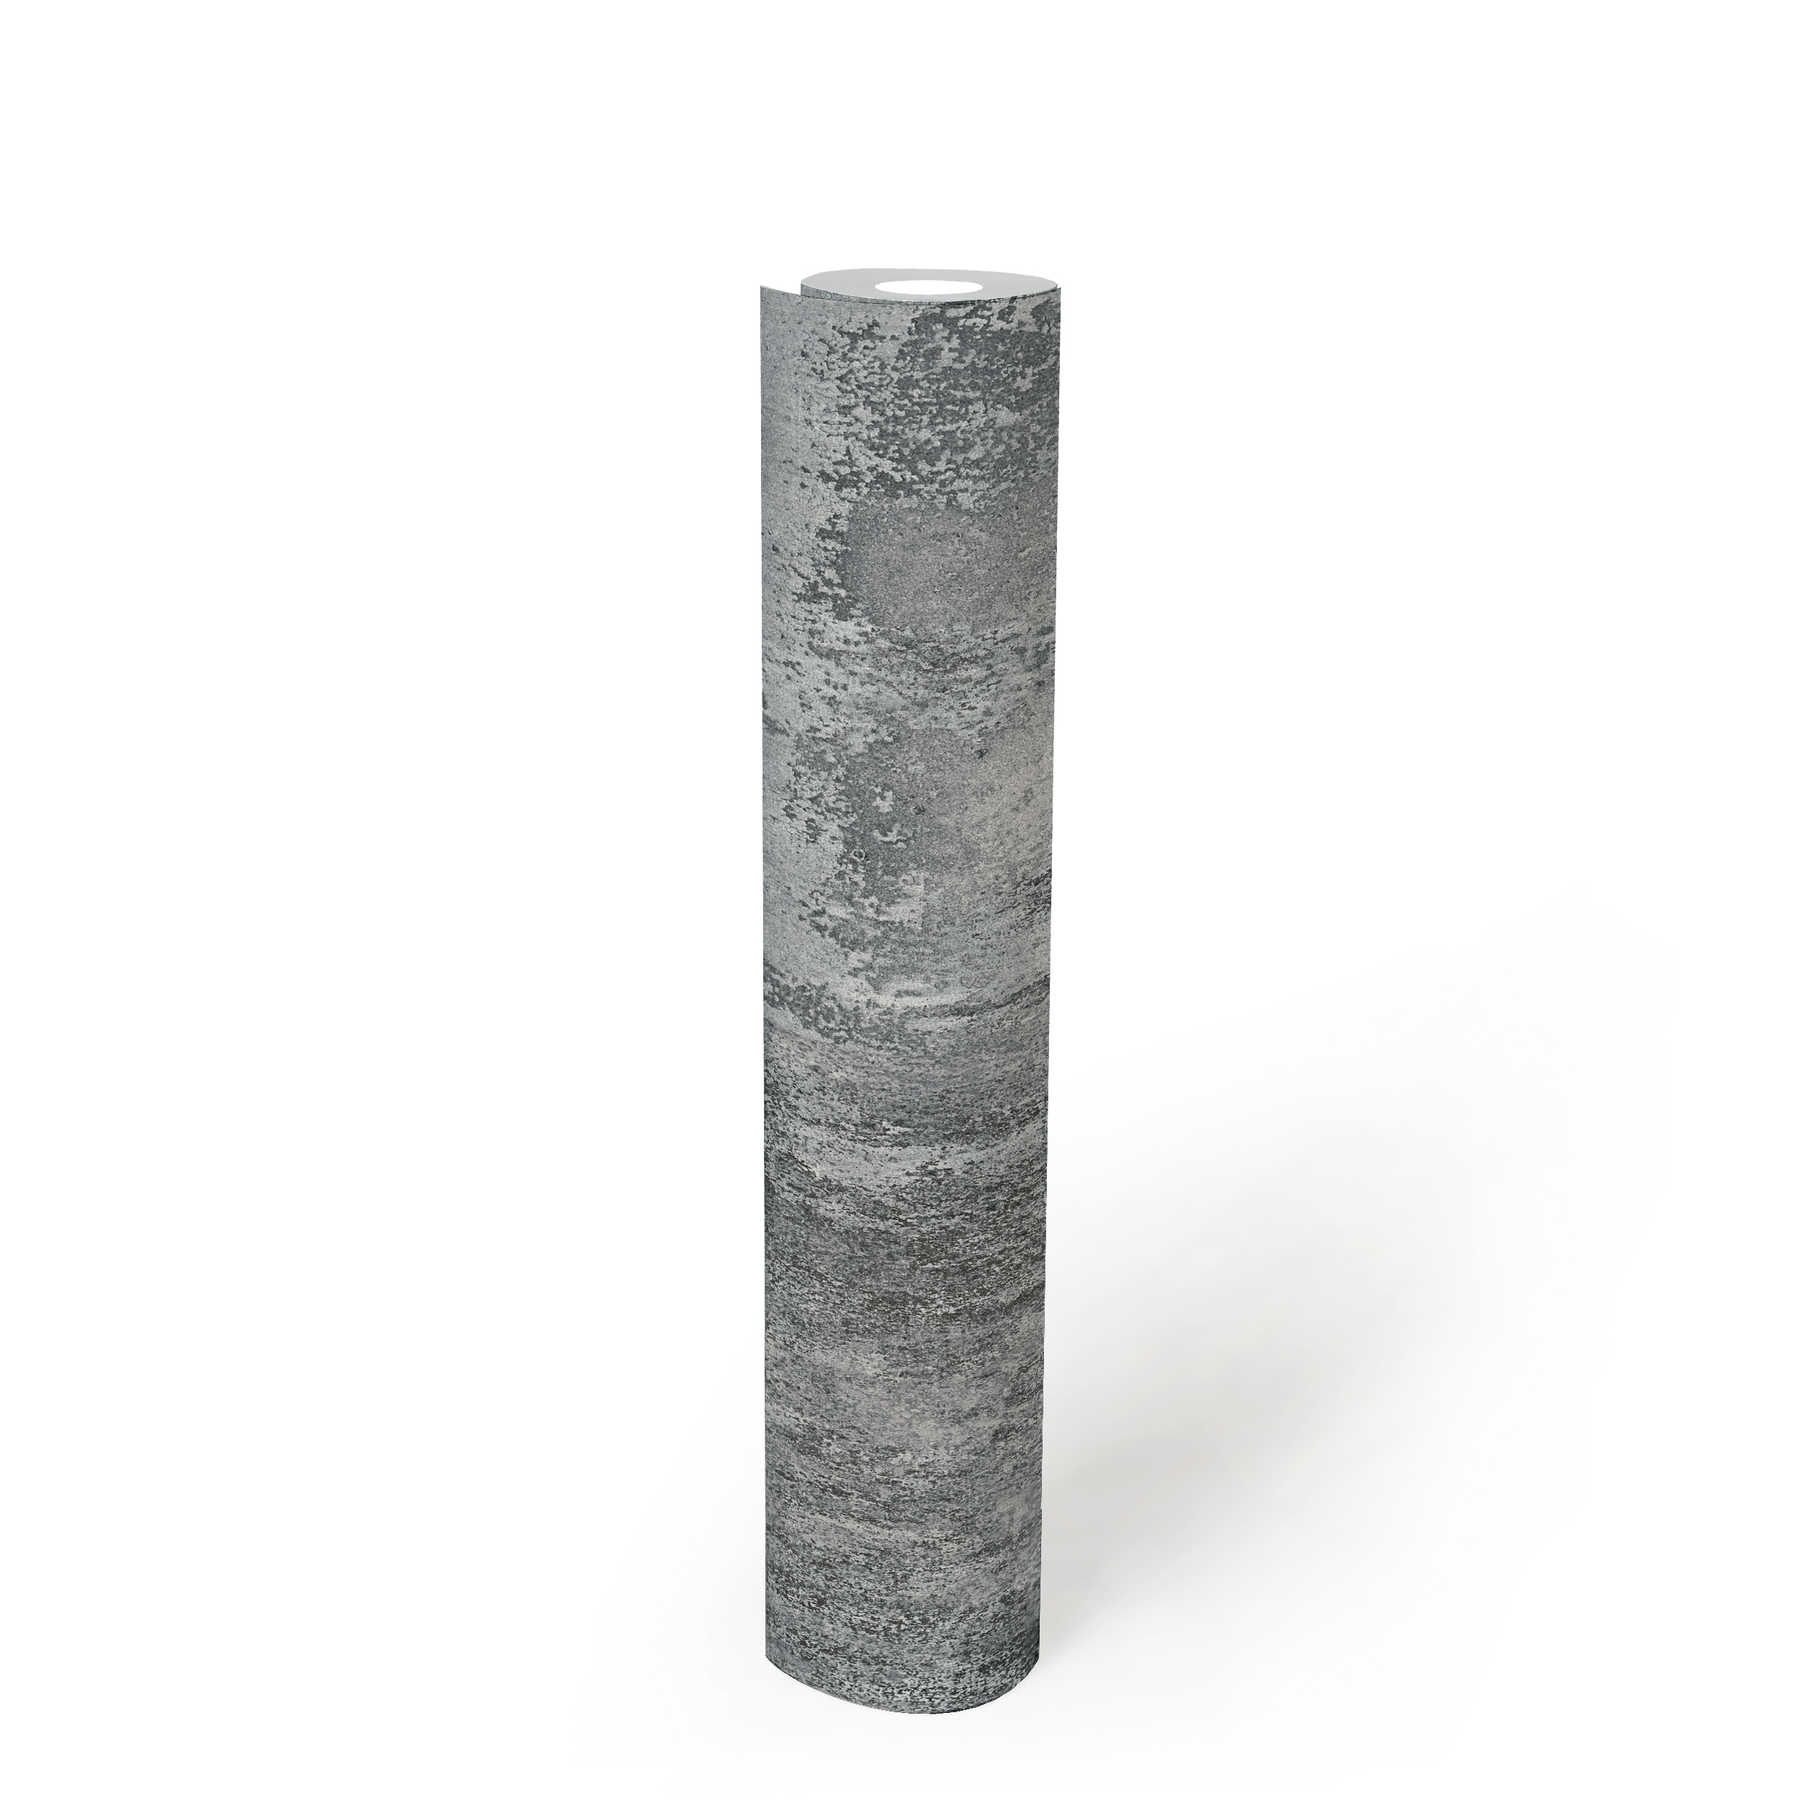             Papier peint aspect métal rustique & motif rugueux - gris, noir, argenté
        